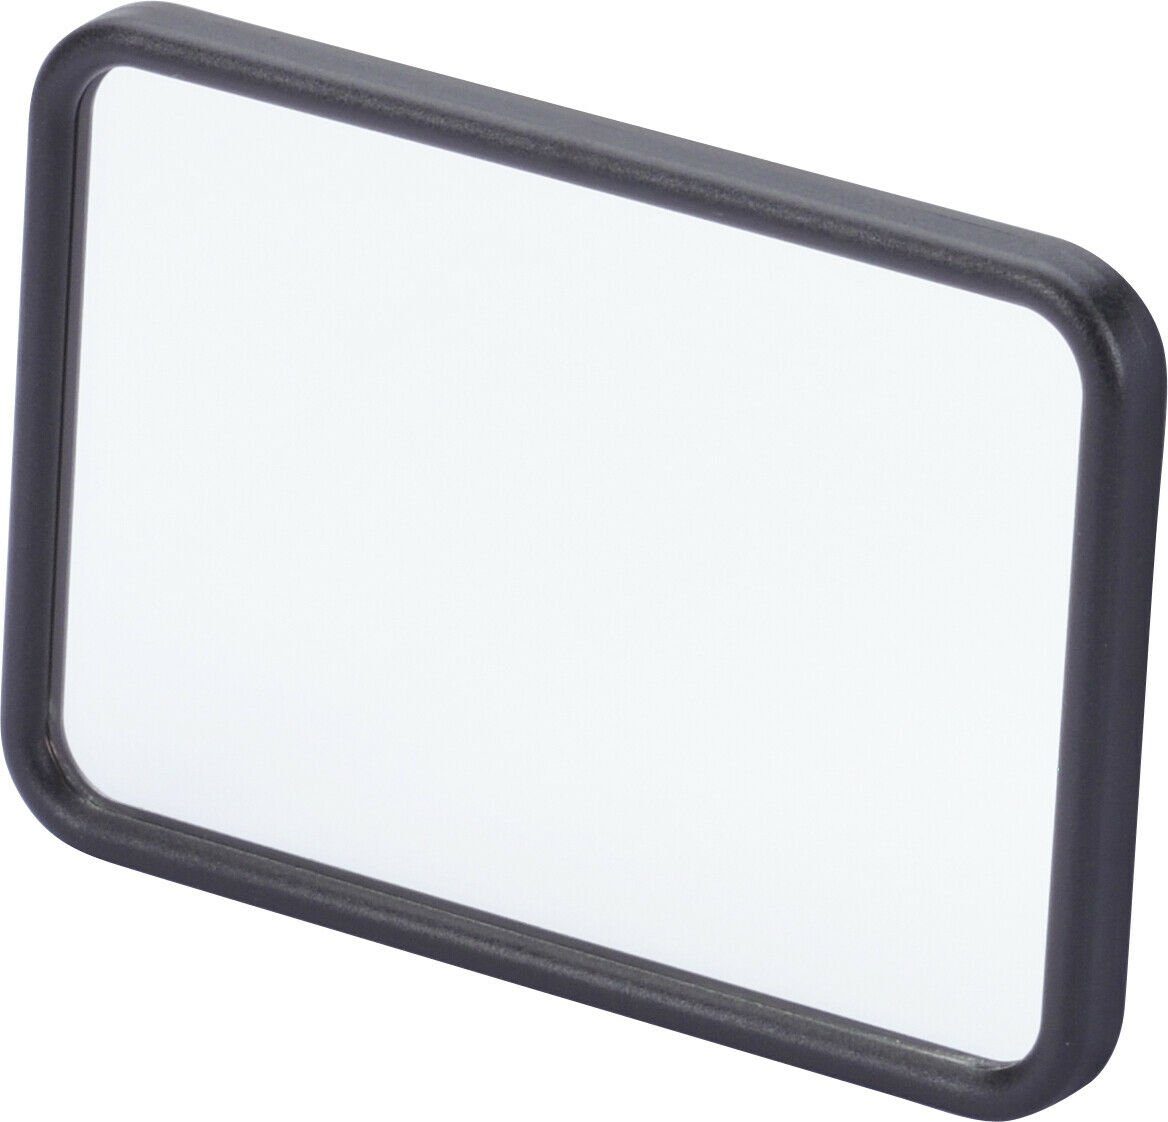 https://i.otto.de/i/otto/904fb8d5-1e5e-4224-95cc-1f0b79ee6783/carstyling-schminkspiegel-zusatzspiegel-makeup-zweiter-spiegel-sonnenblendenspiegel-auto-extra-spiegel.jpg?$formatz$